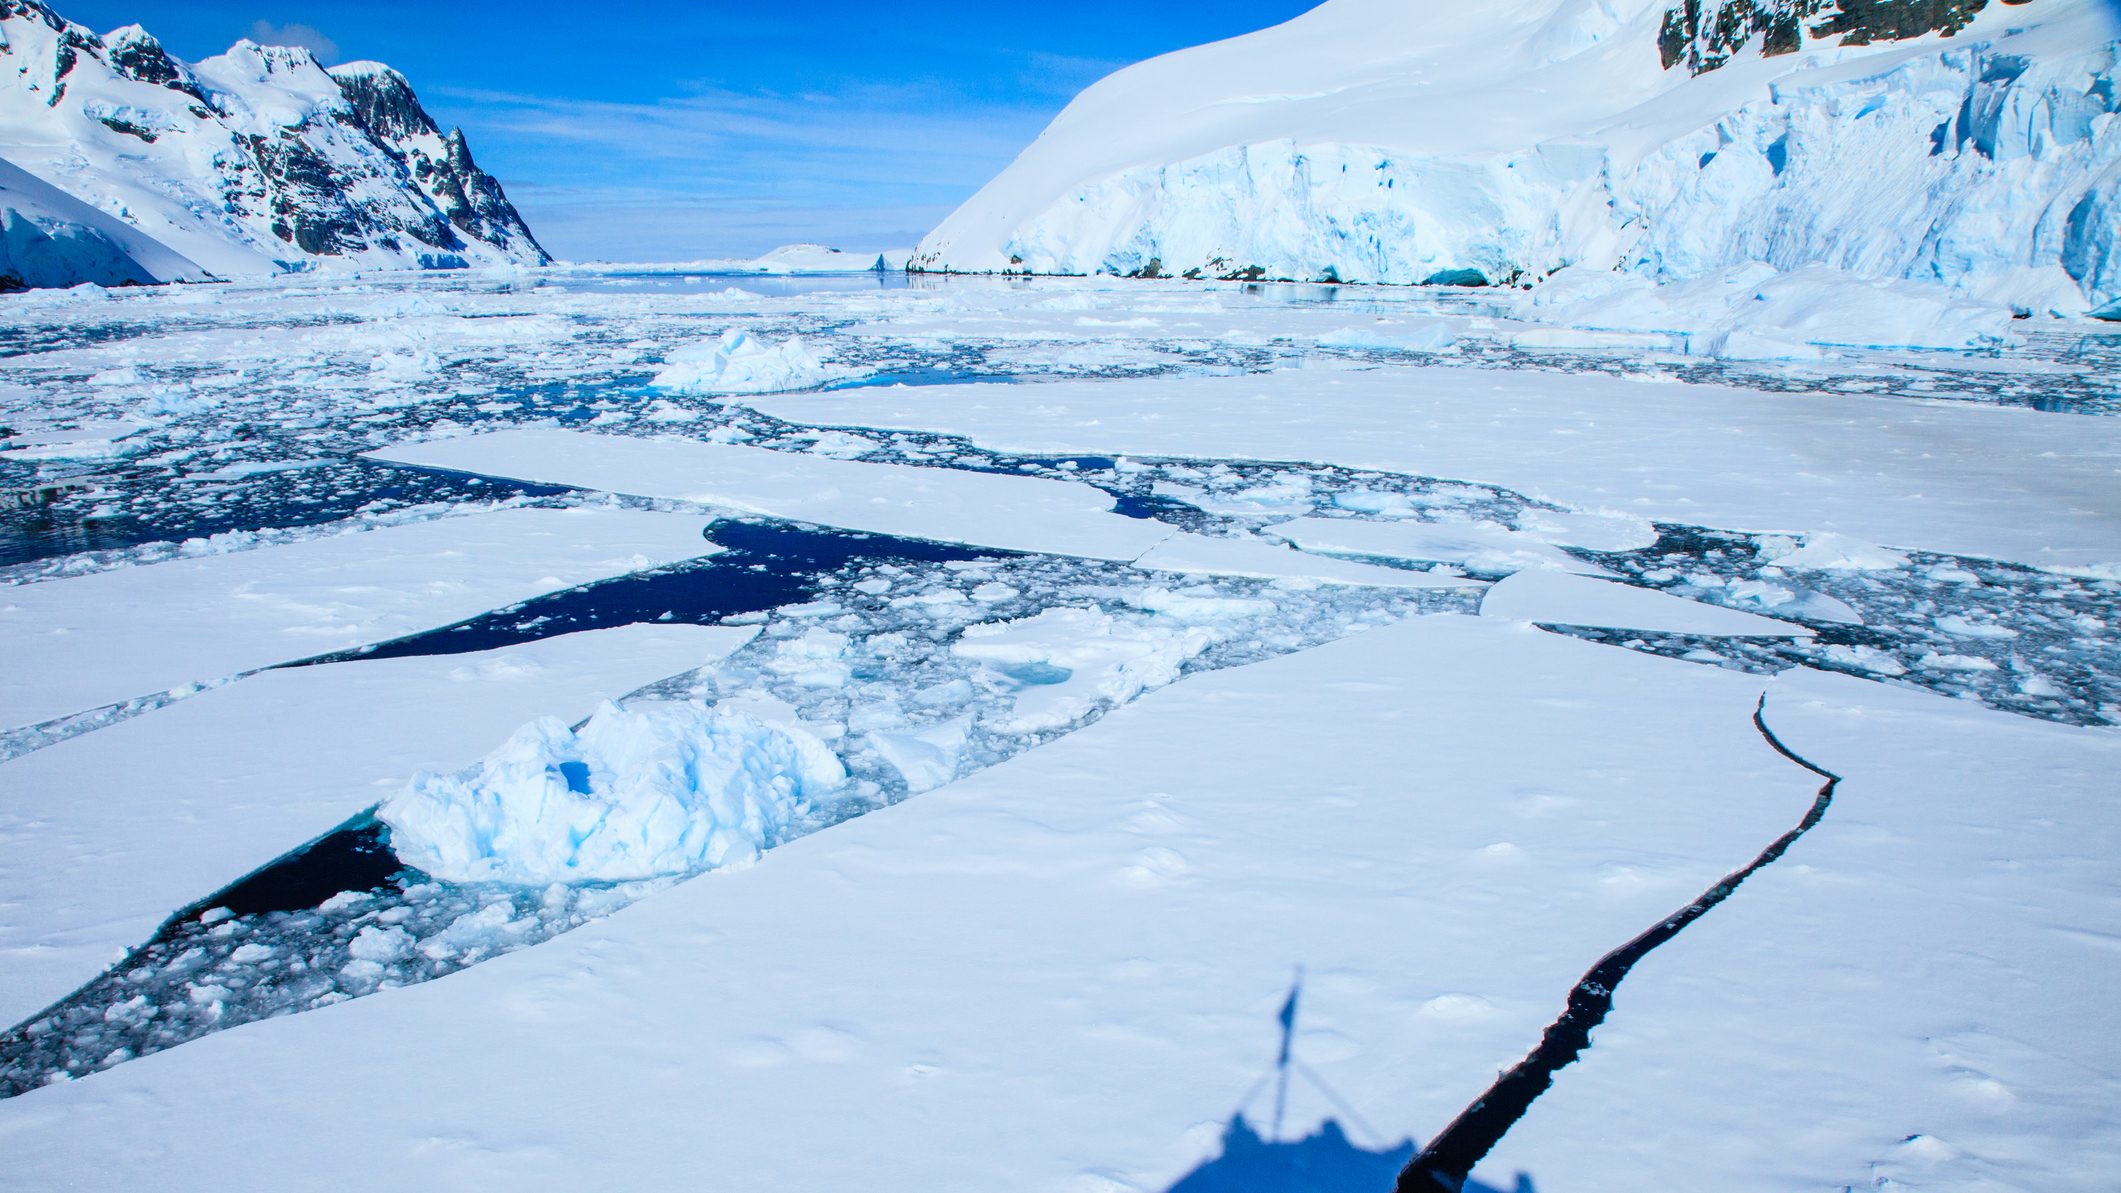 Életre bukkantak az Antarktisz jege alatt